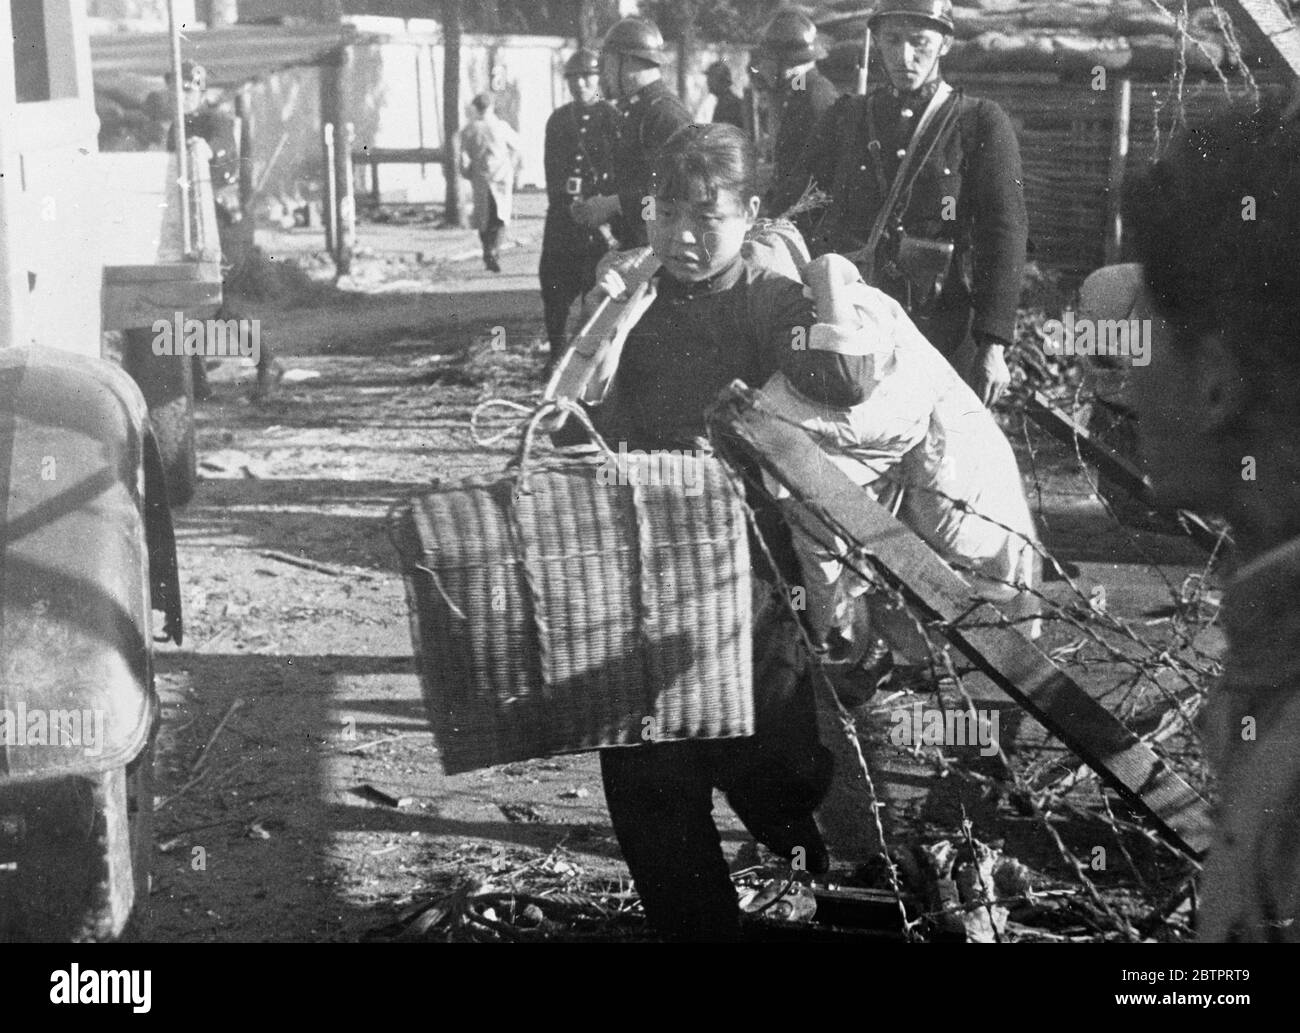 Ein Mädchen 'removal'. Bomb und Show gaben ihr Kraft. Ein chinesisches Mädchen aus Nantao, dem verwüsteten chinesischen Bezirk von Shanghai, belastet von ihrem Besitz, als sie Zuflucht in der Internationalen Siedlung suchte, die bereits mit 3 Millionen ihrer Landsleute und Frauen verklemmt ist, wird aufhören Angst erleuchtet die Fußstapfen des Mädchens, als sie eilte, um zu beherbergen. Dezember 1937 Stockfoto